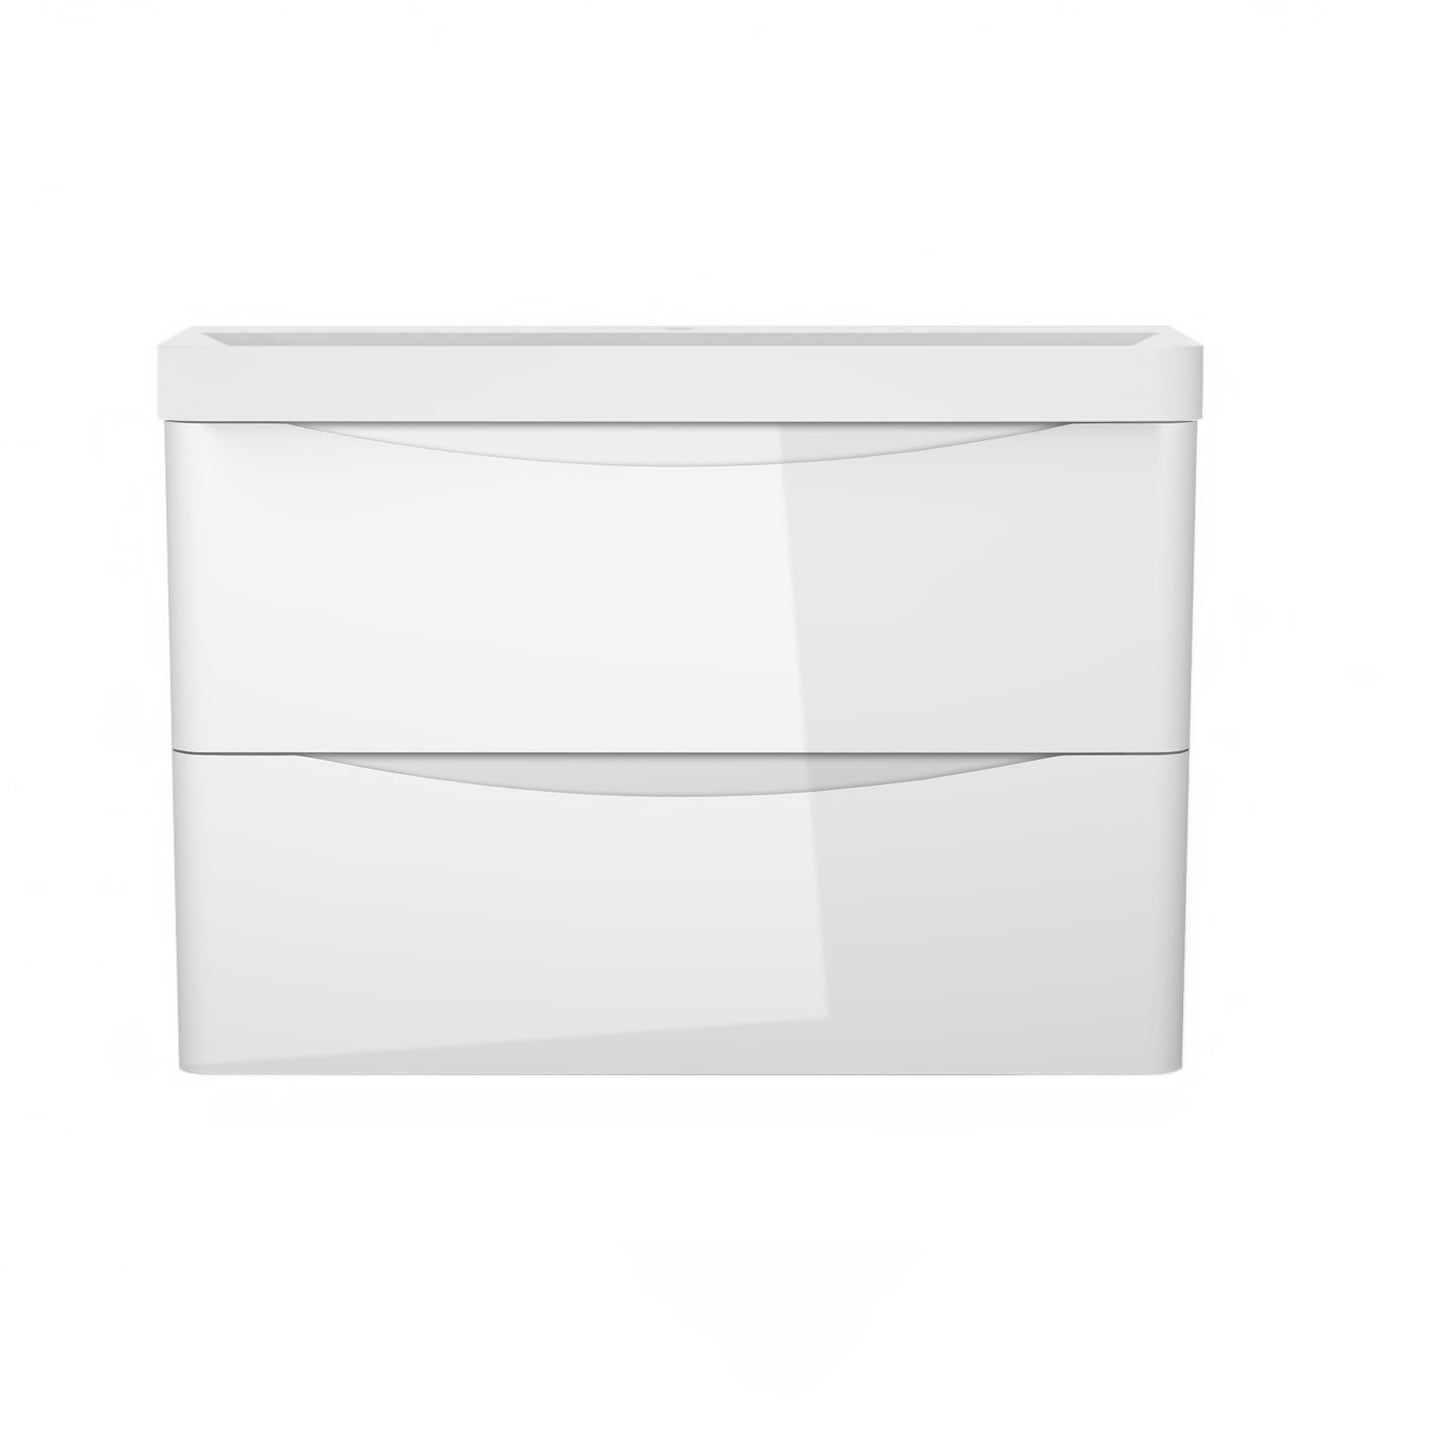 Waschbecken Waschtische mit Unterschrank Badmöbel Set Weiß 80 cm